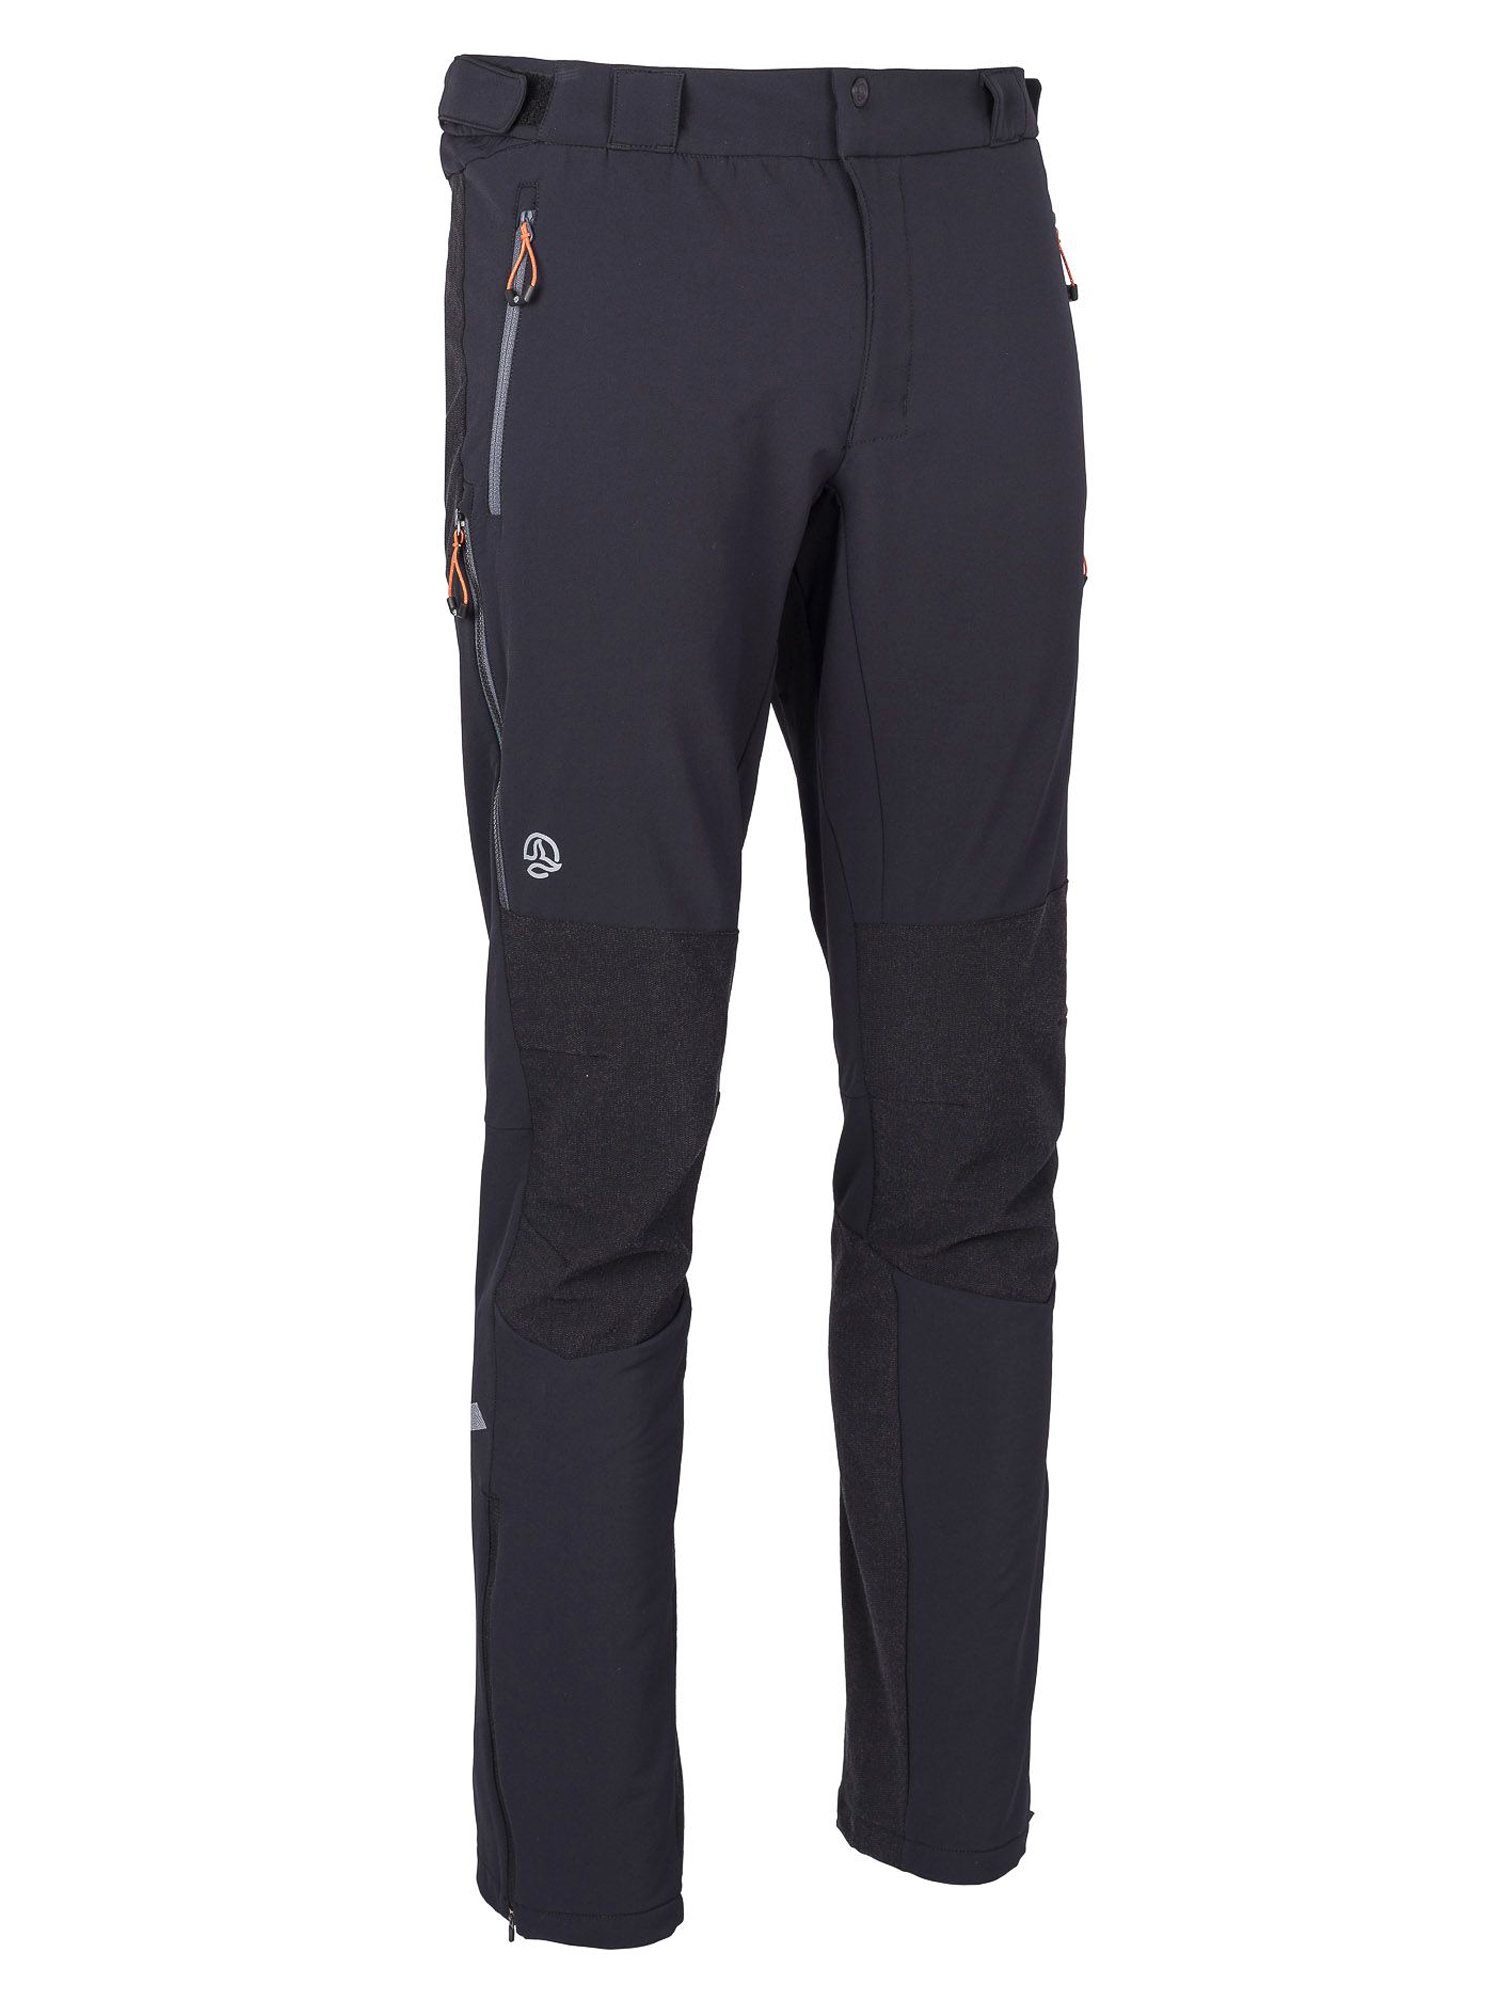 Спортивные брюки мужские Ternua Elbrus Pt M черные S